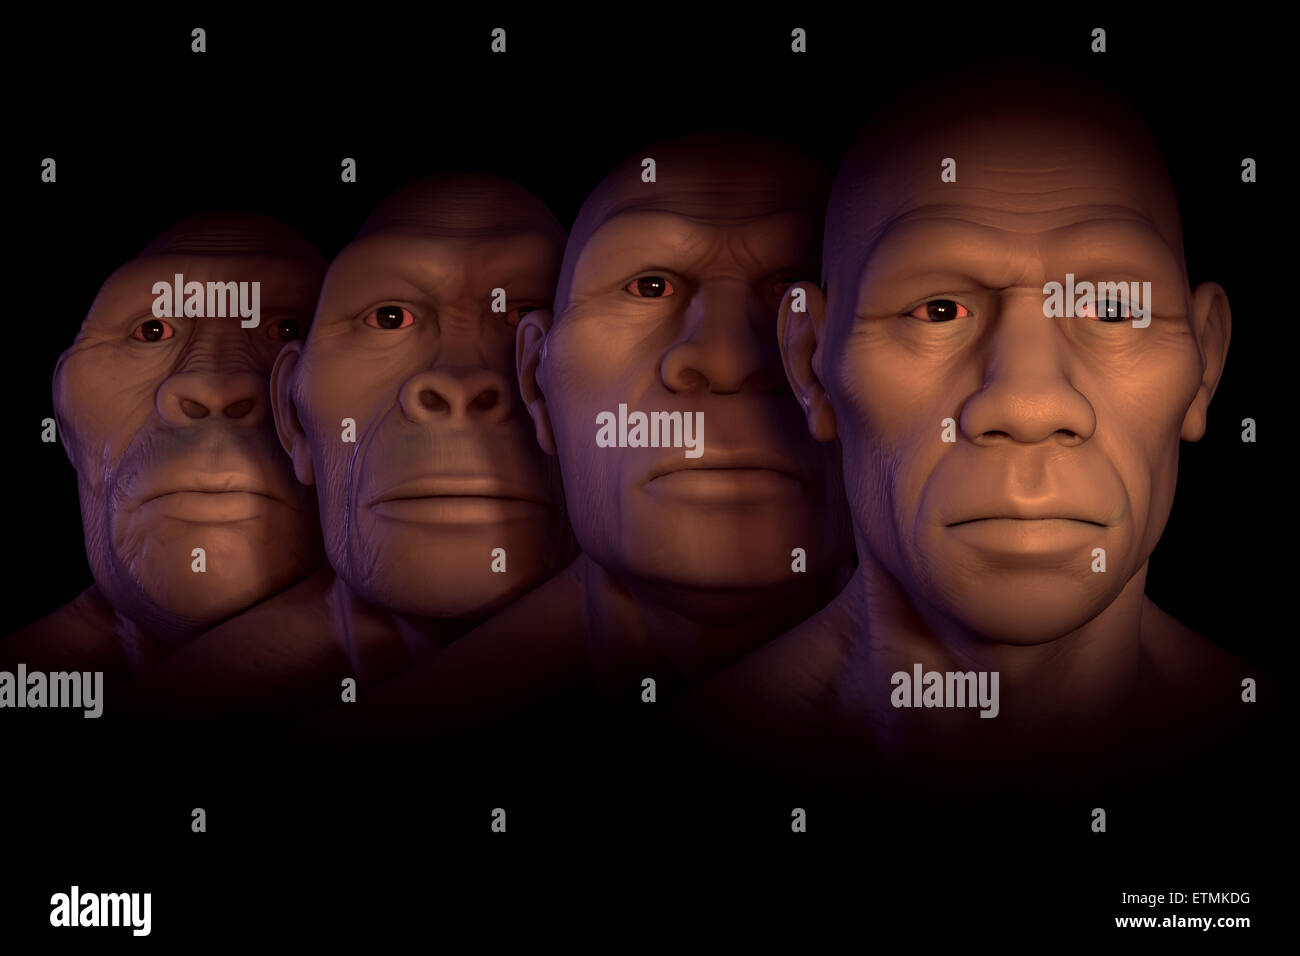 Konzeptionelle Darstellung vier Stufen der menschlichen Evolution; Australopithecus, Homo Habilis, Homo Erectus und Homo Sapiens. Stockfoto